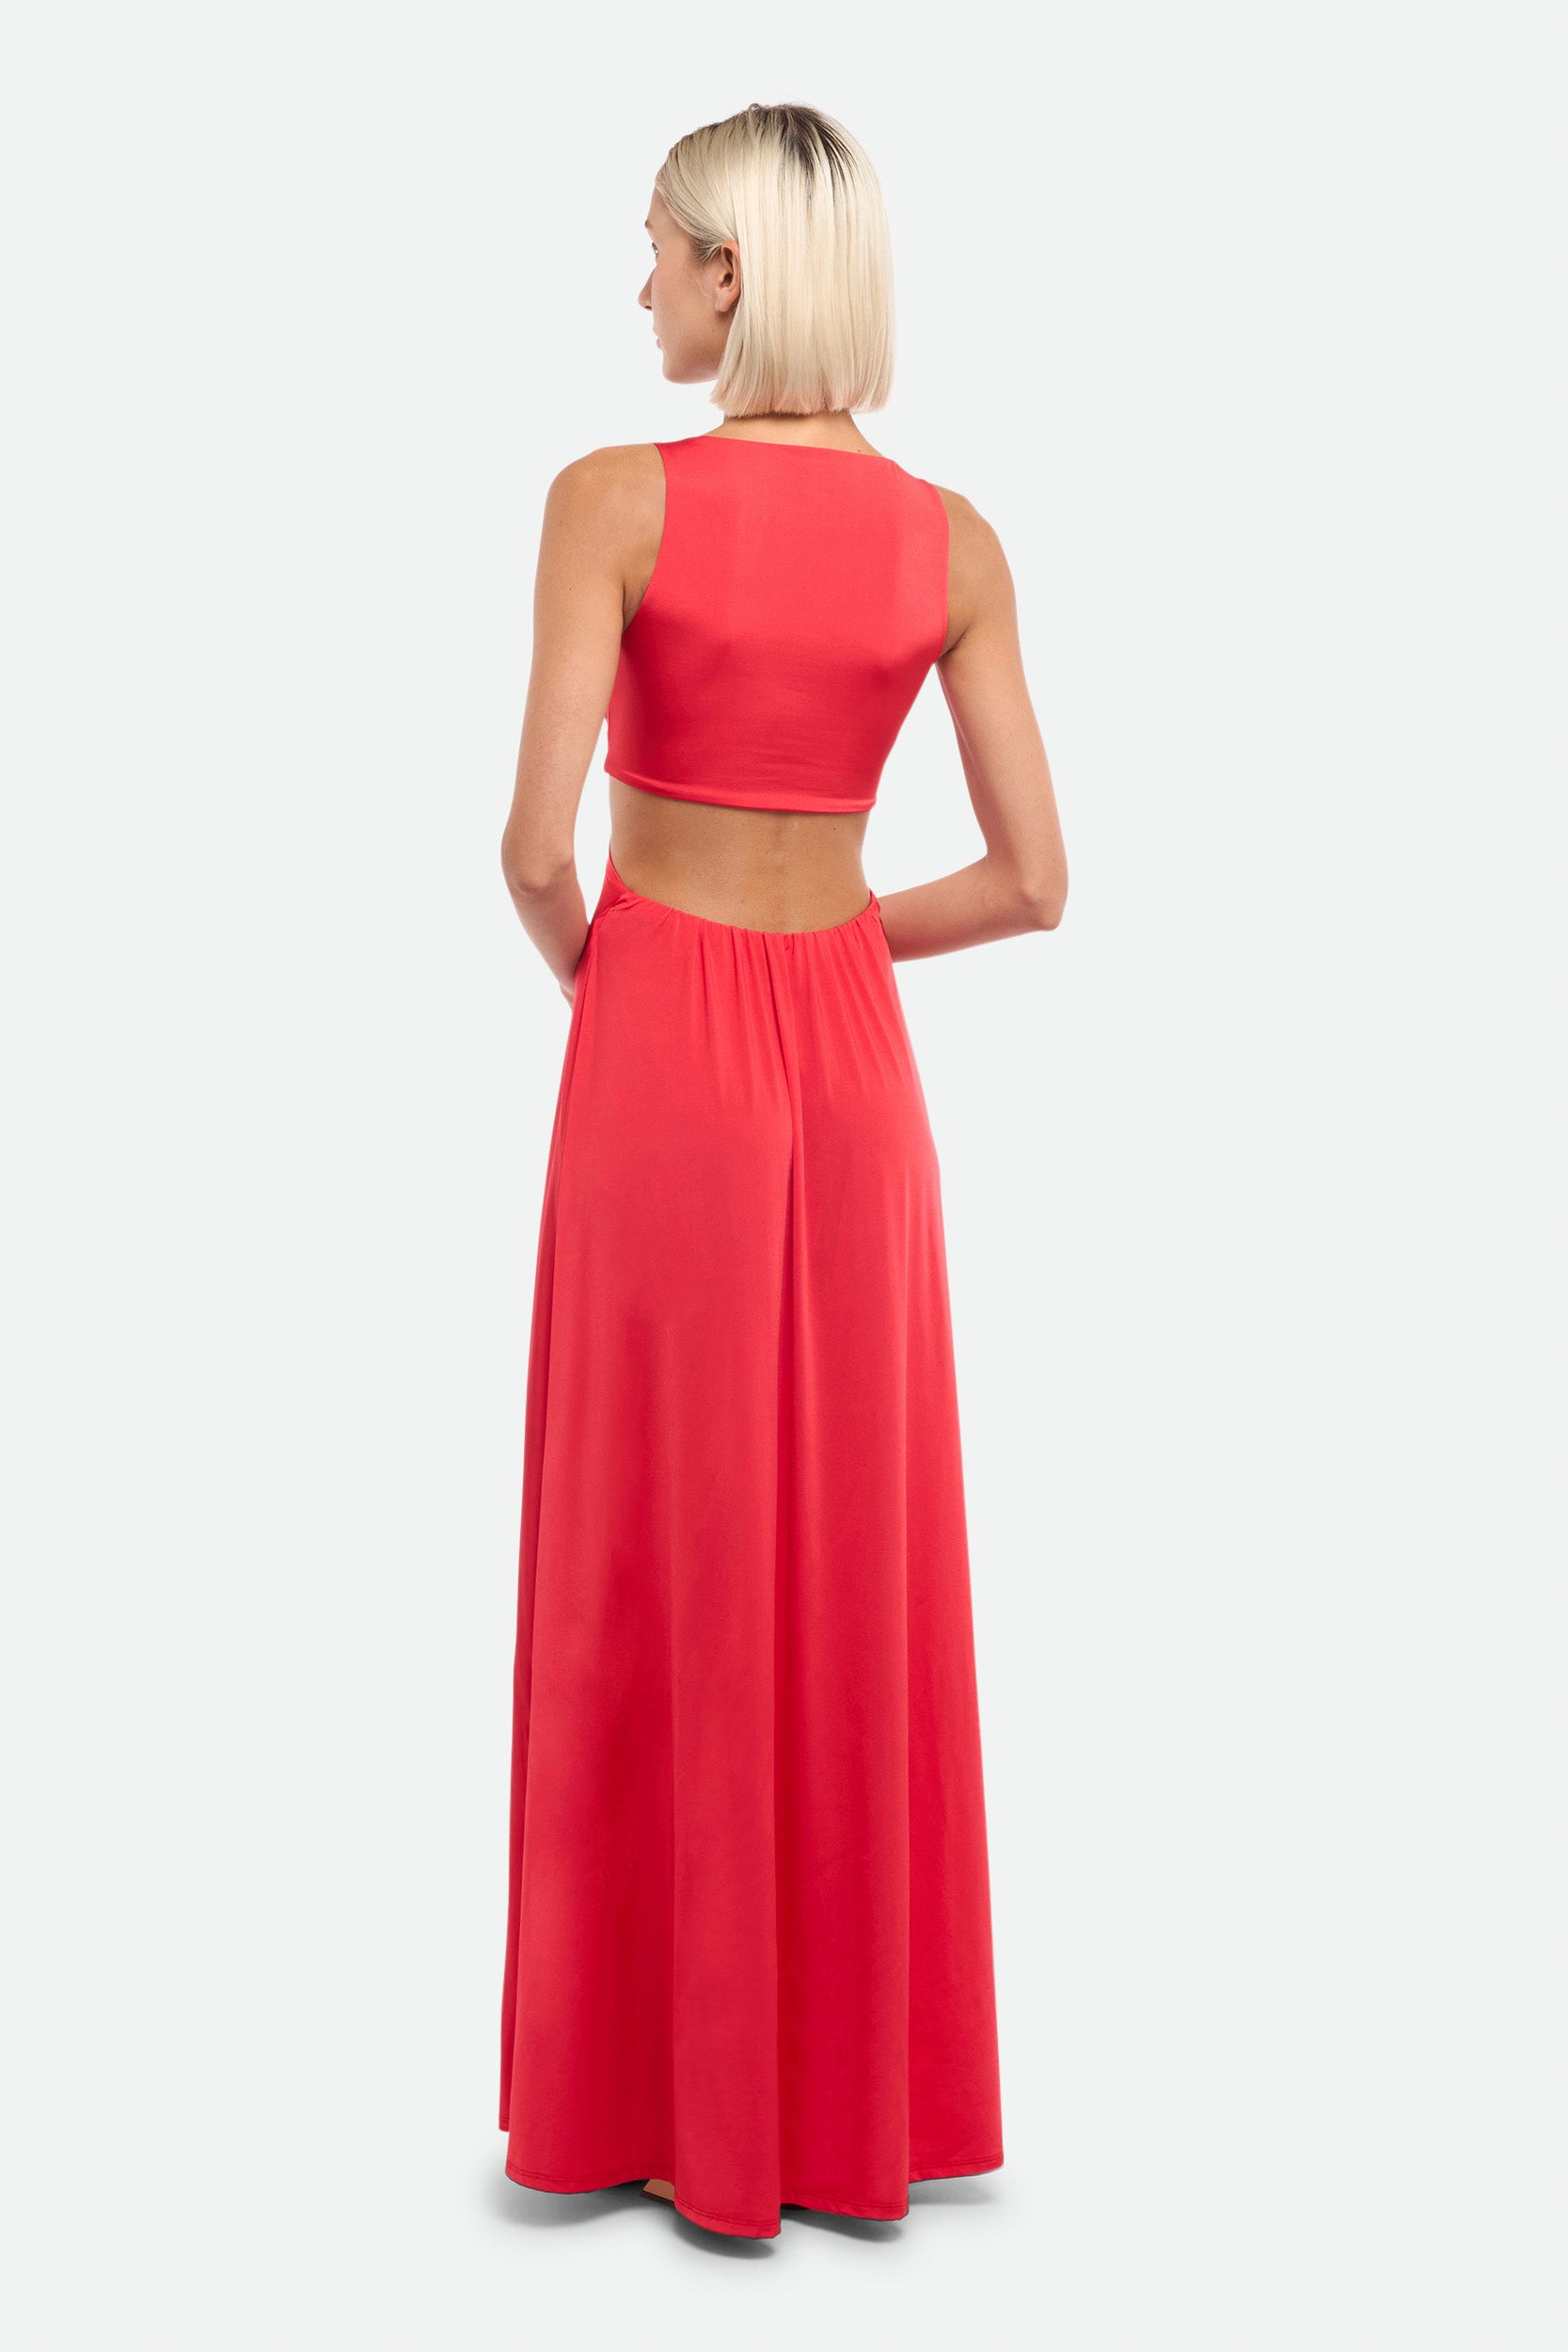 Pinko Long Red Dress